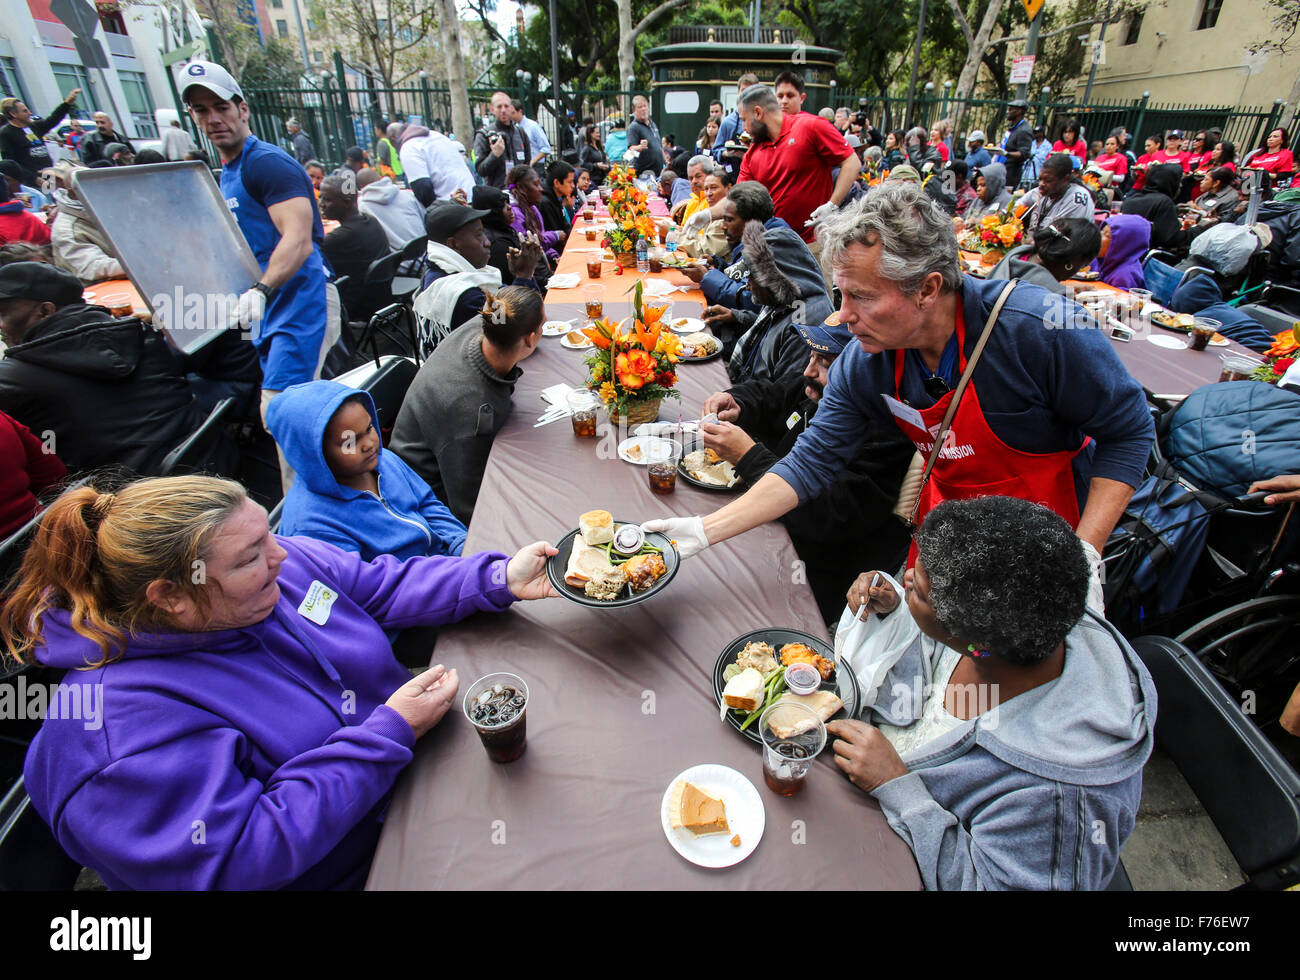 (151126)--LOS ANGELS, 26. November 2015 (Xinhua)--Menschen nehmen ihr Thanksgiving-Essen in Los Angeles, USA, am 25. November 2015. Tausende von Skid Row Bewohner und obdachlosen Menschen von der Innenstadt und darüber hinaus wurden Thanksgiving Abendessen während der Los Angeles Mission Jahresurlaub fest.  (Xinhua/Zhao Hanrong) (Azp) Stockfoto